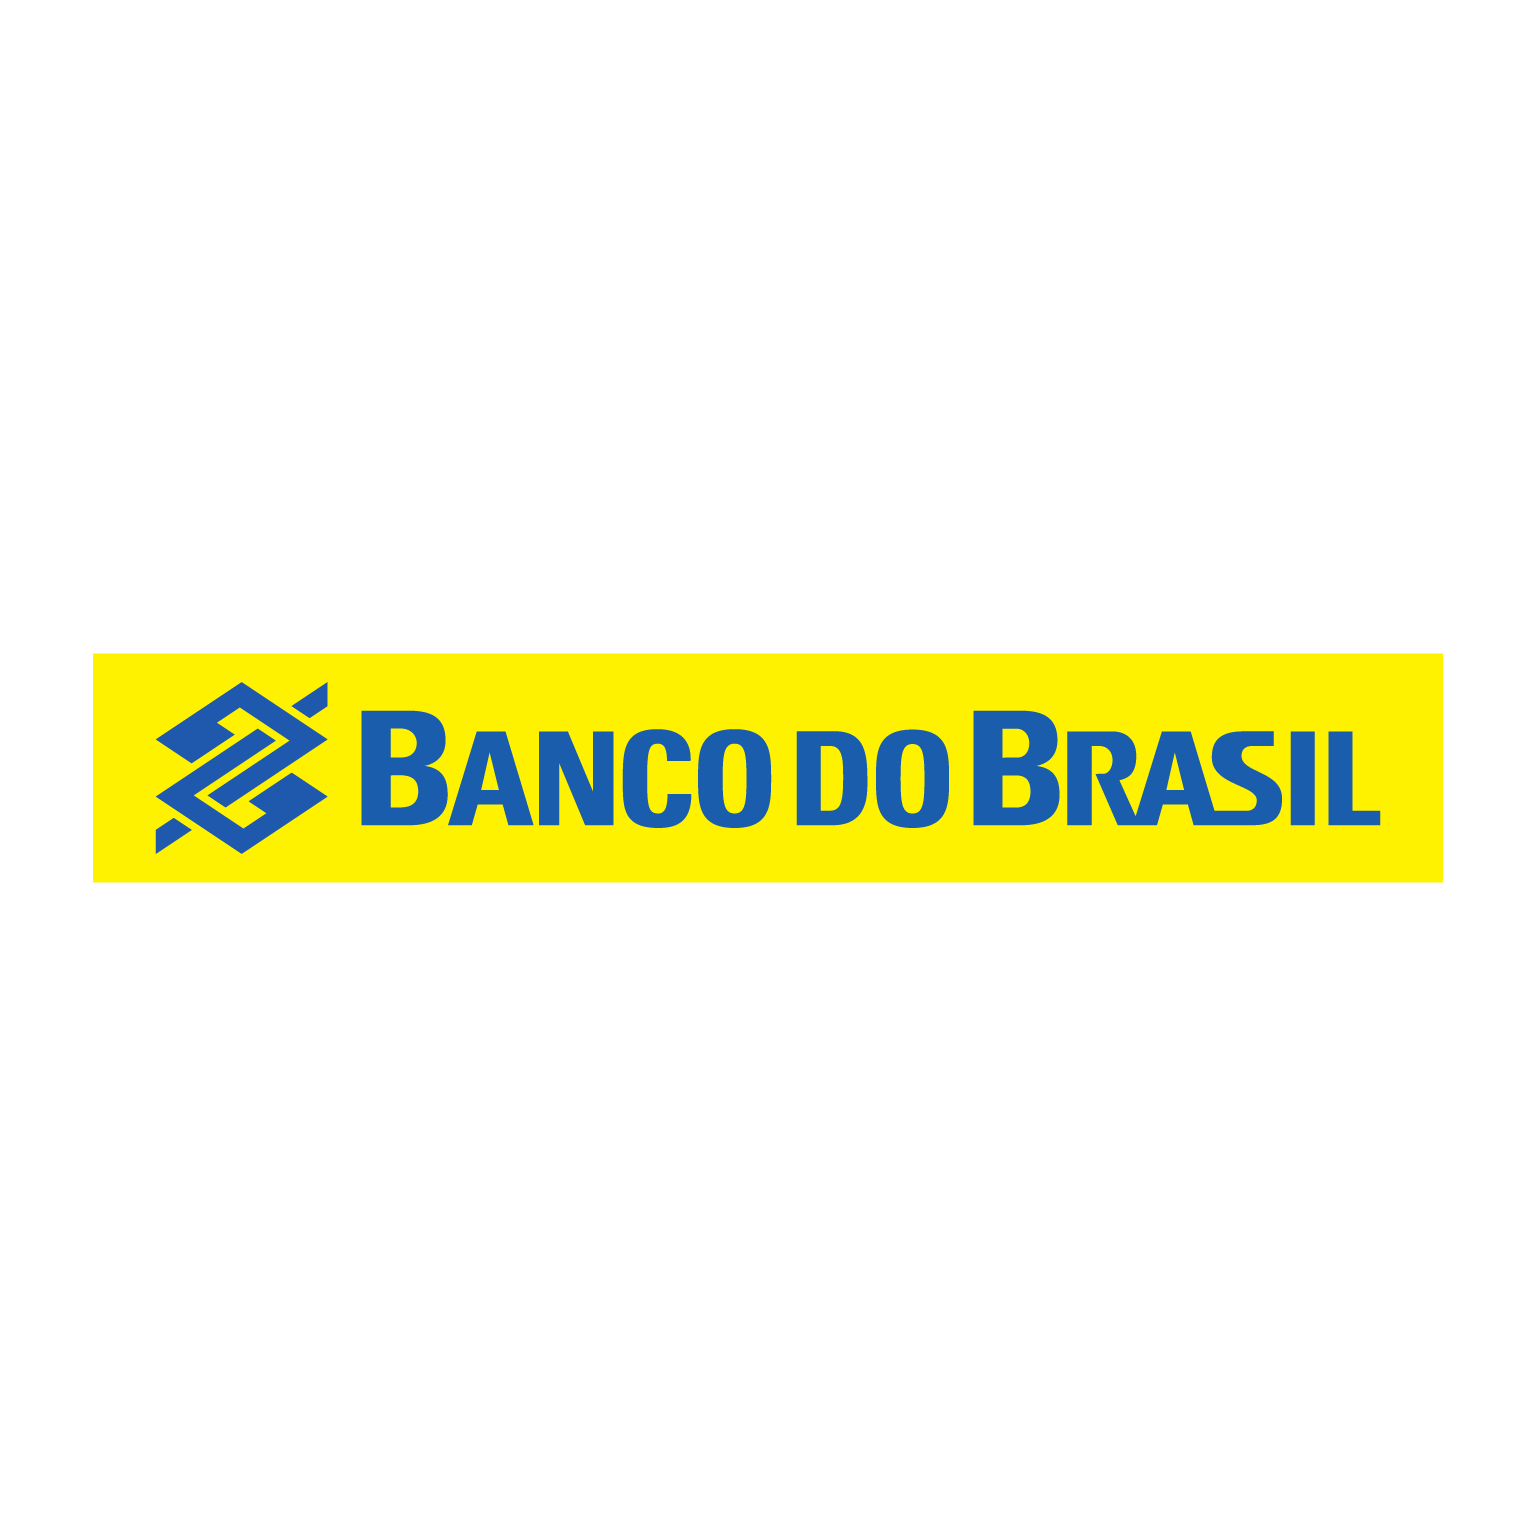 escudo banco do brasil horizontal brasao